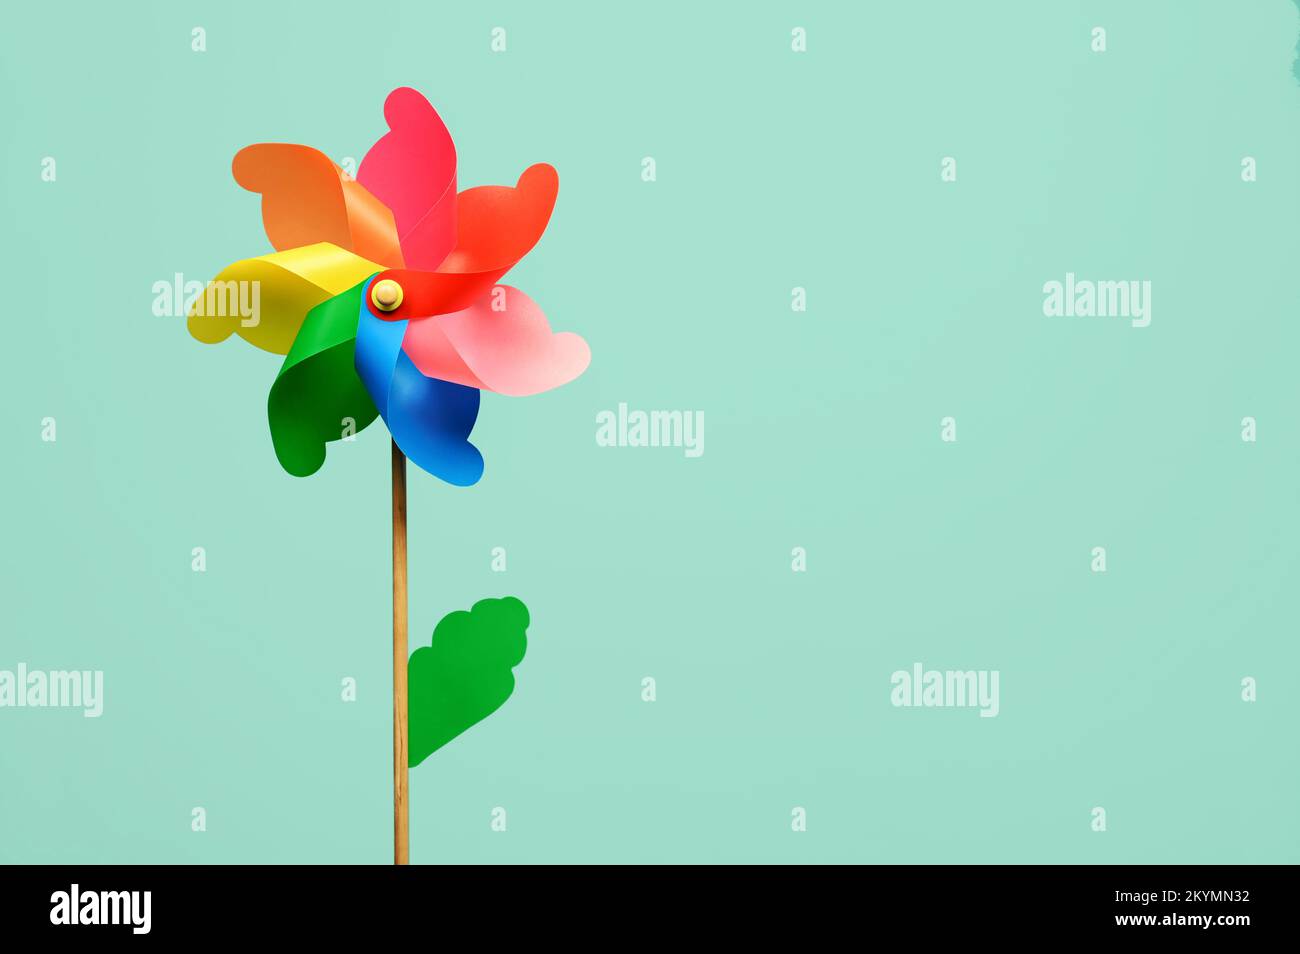 Ruota a forma di fiore multicolore sul bastone con foglia verde su sfondo turchese brillante Foto Stock